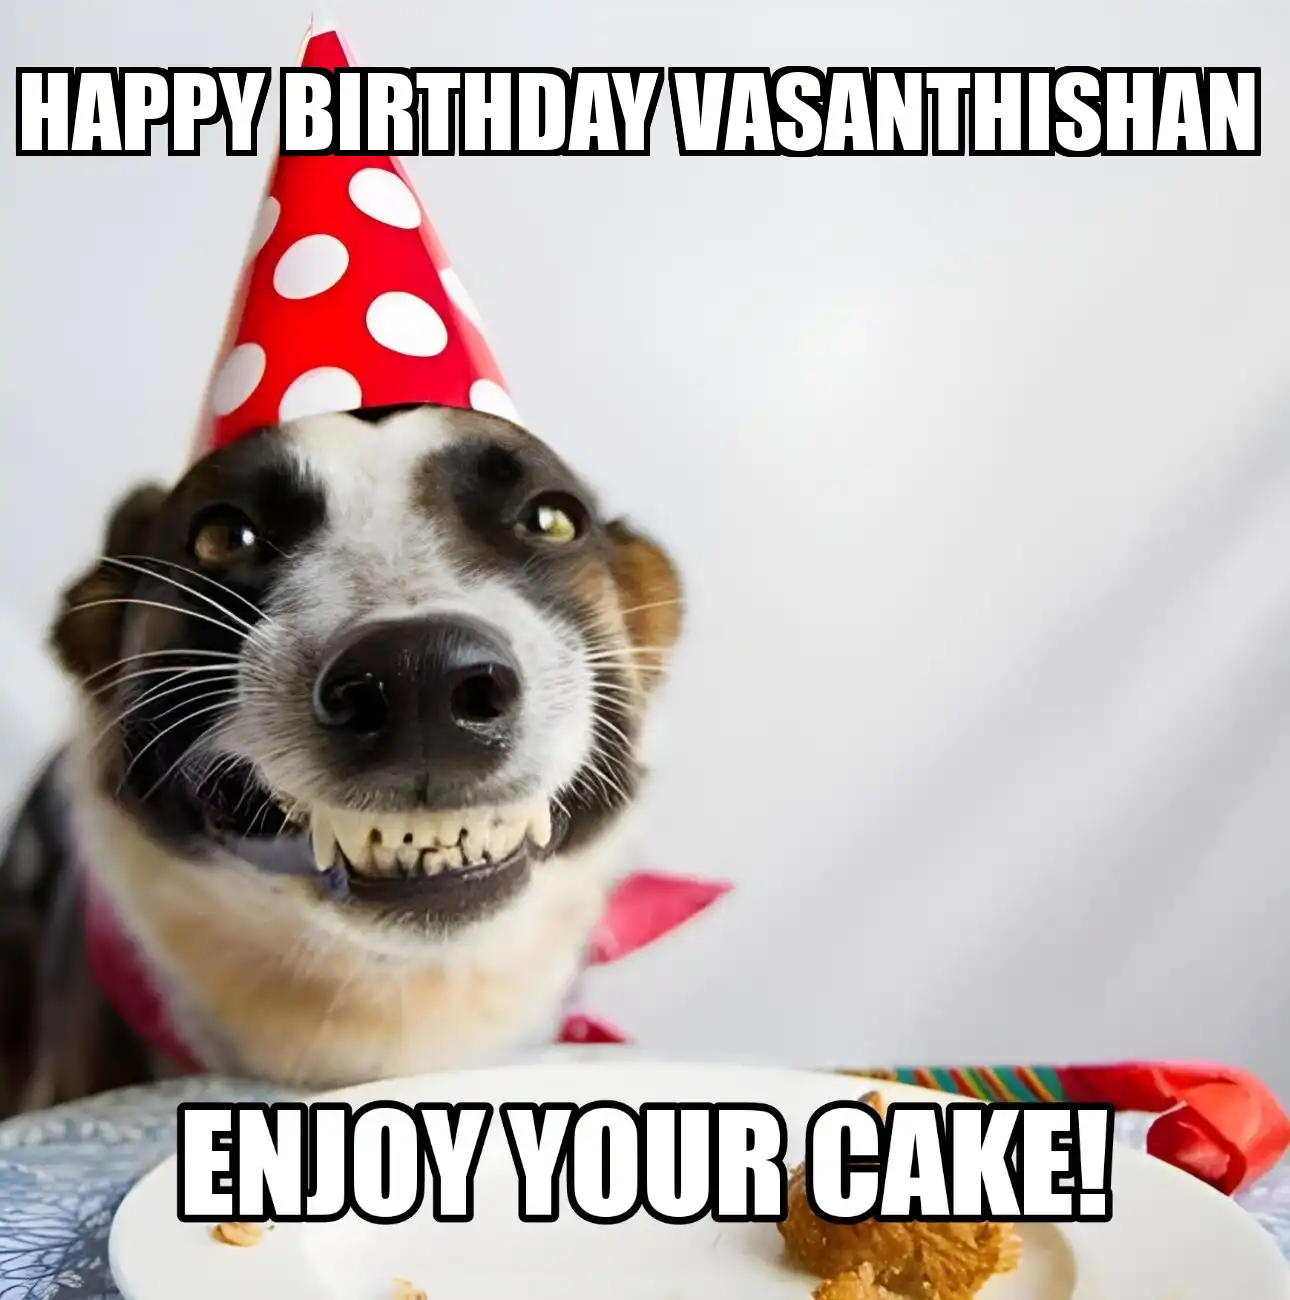 Happy Birthday Vasanthishan Enjoy Your Cake Dog Meme